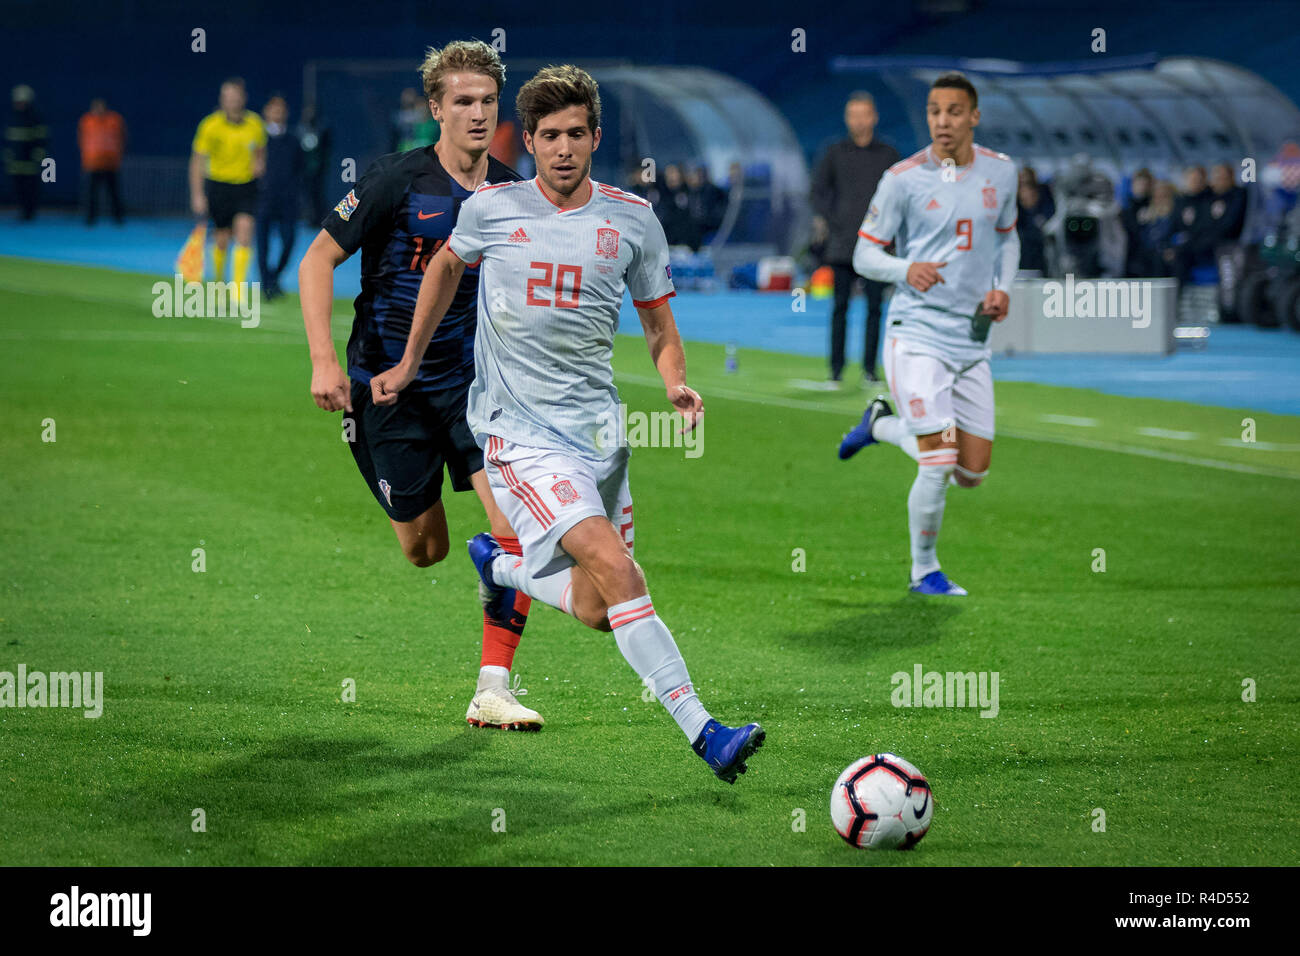 ZAGREB, CROATIA - NOVEMBER 15, 2018: UEFA Nations League football match Croatia vs. Spain. In action Tin Jedvaj (16) and Sergi Roberto (20) Stock Photo